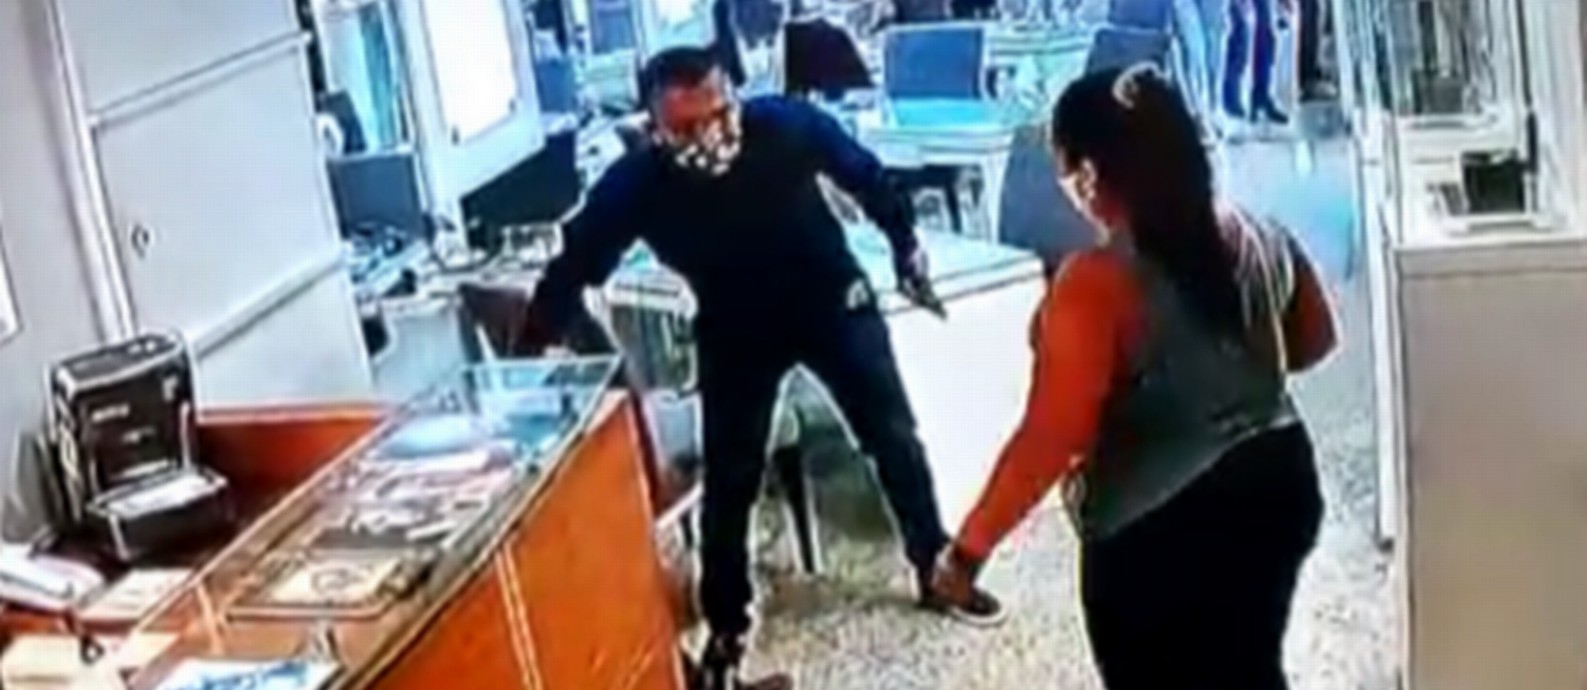 Assaltante armado durante roubo numa joalheria, em Ipanema Foto: Reprodução vídeo